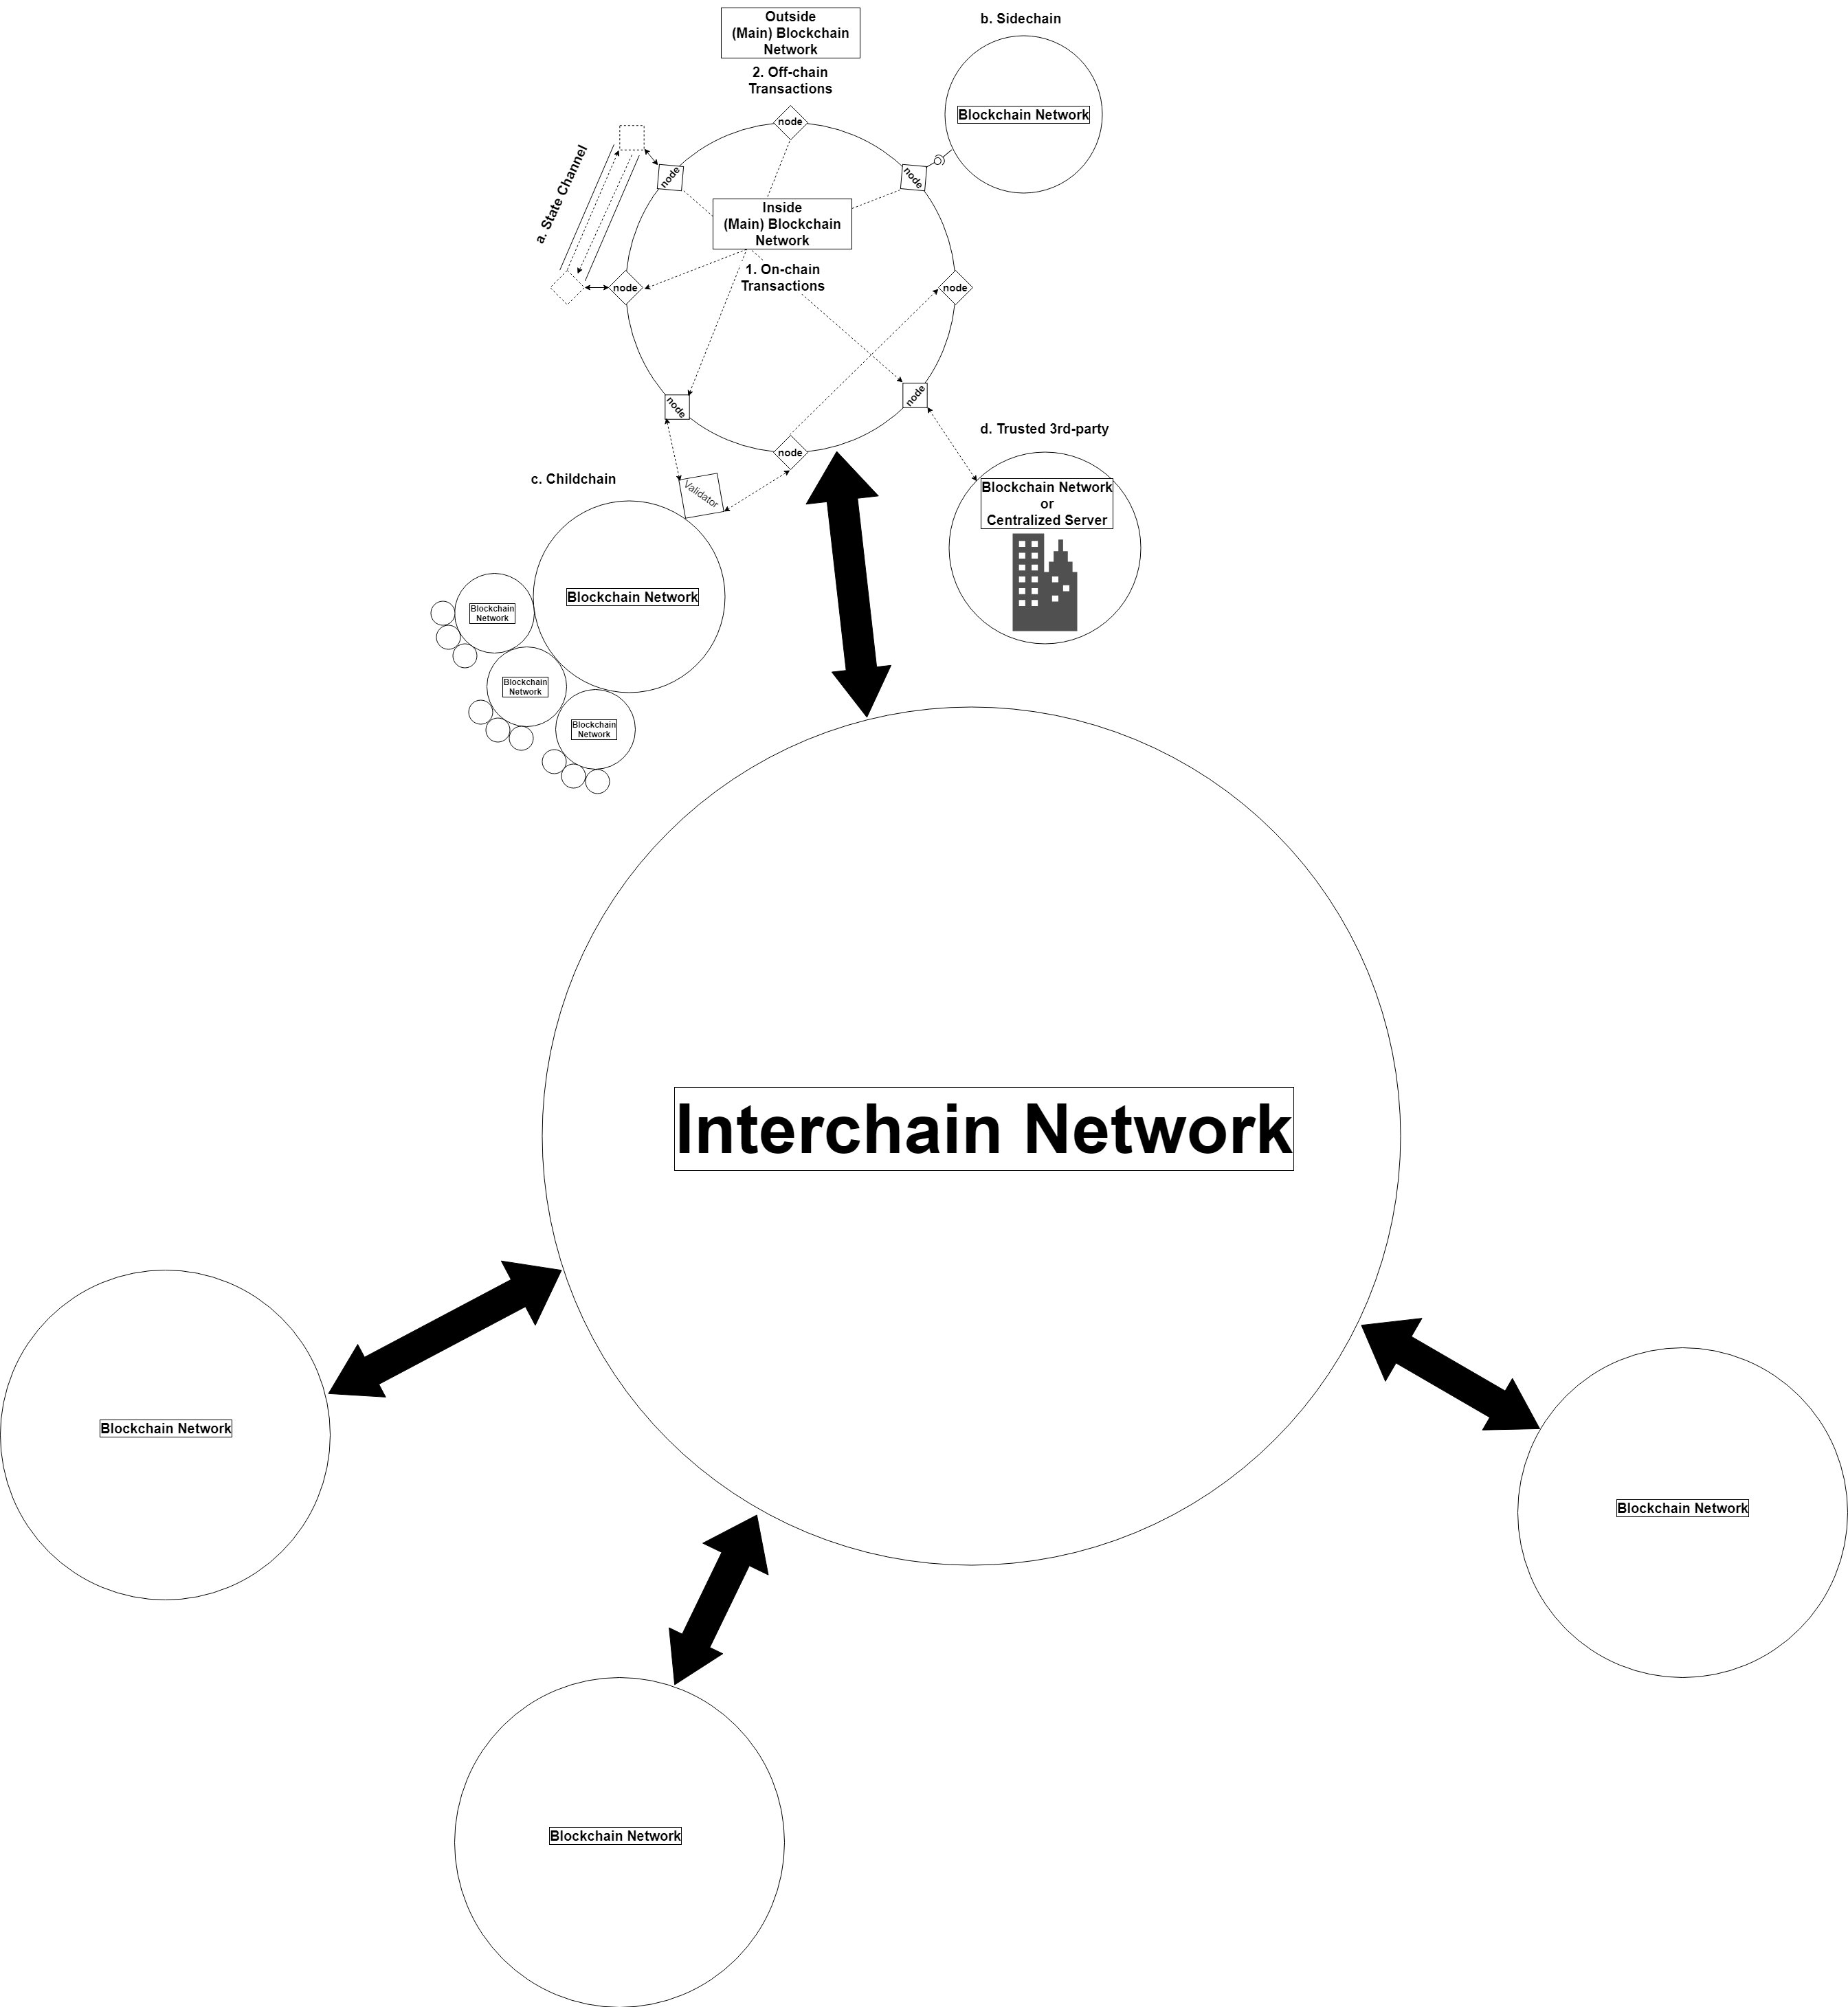 interchain